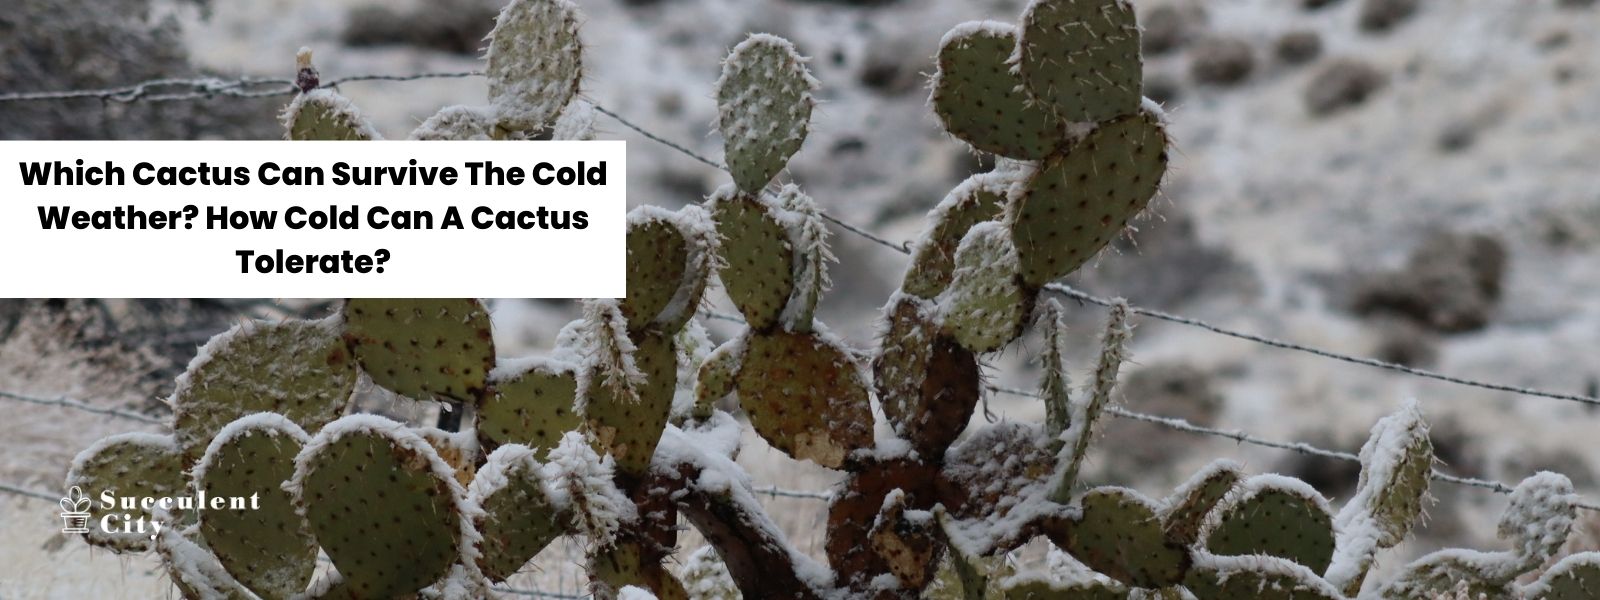 ¿Qué cactus puede sobrevivir al clima frío? ¿Qué frío puede tolerar un cactus?